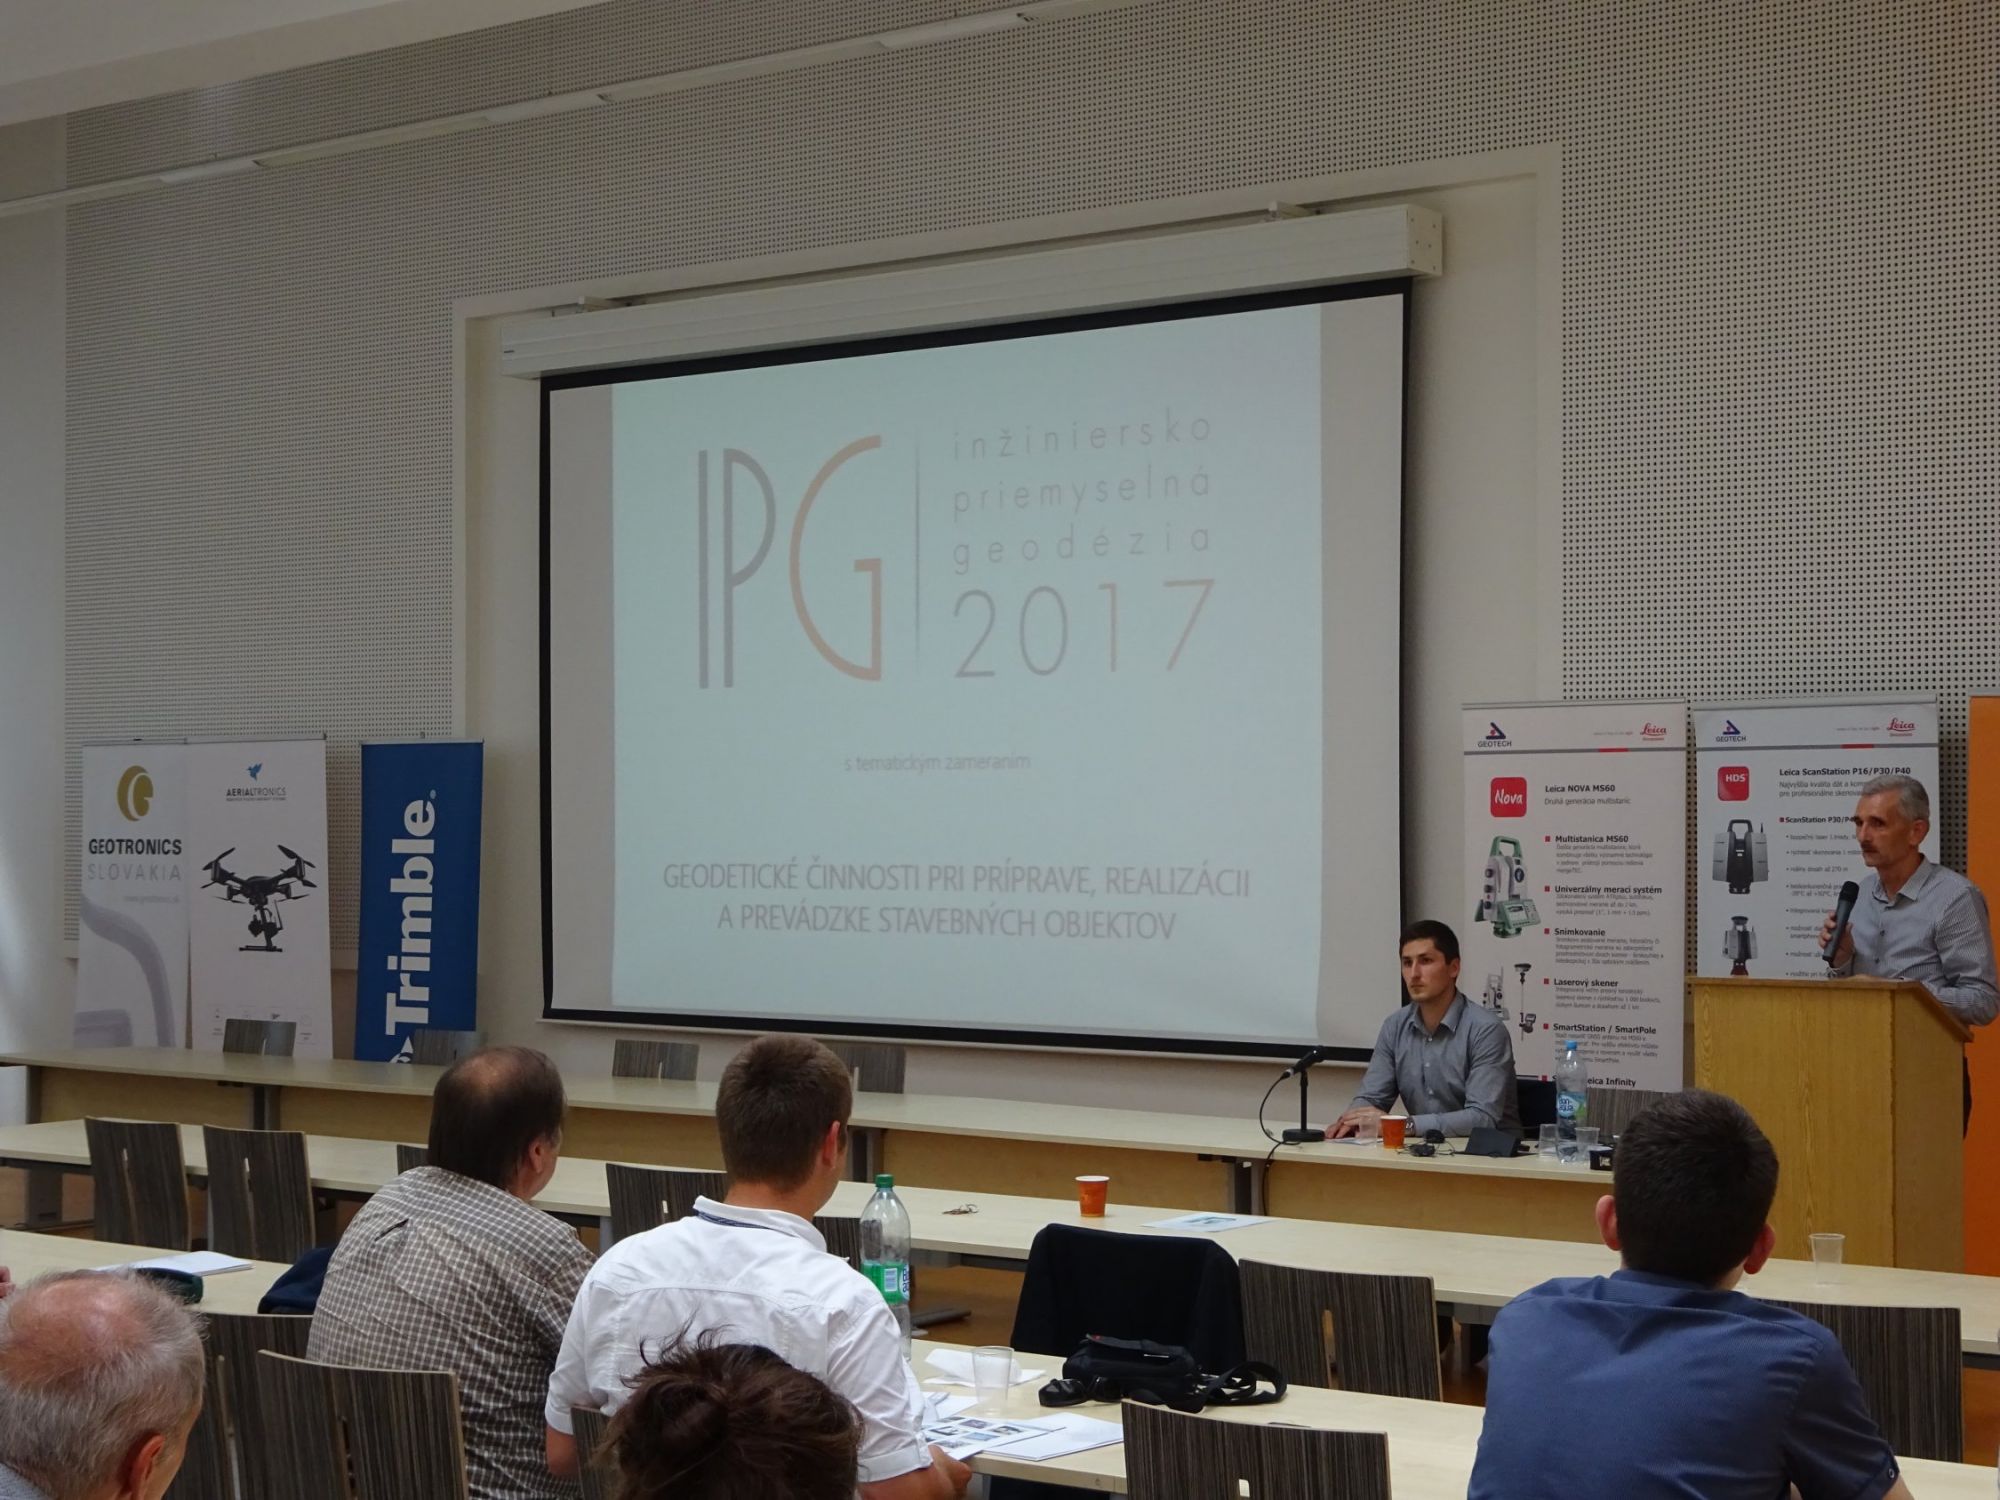 IPG2017-01